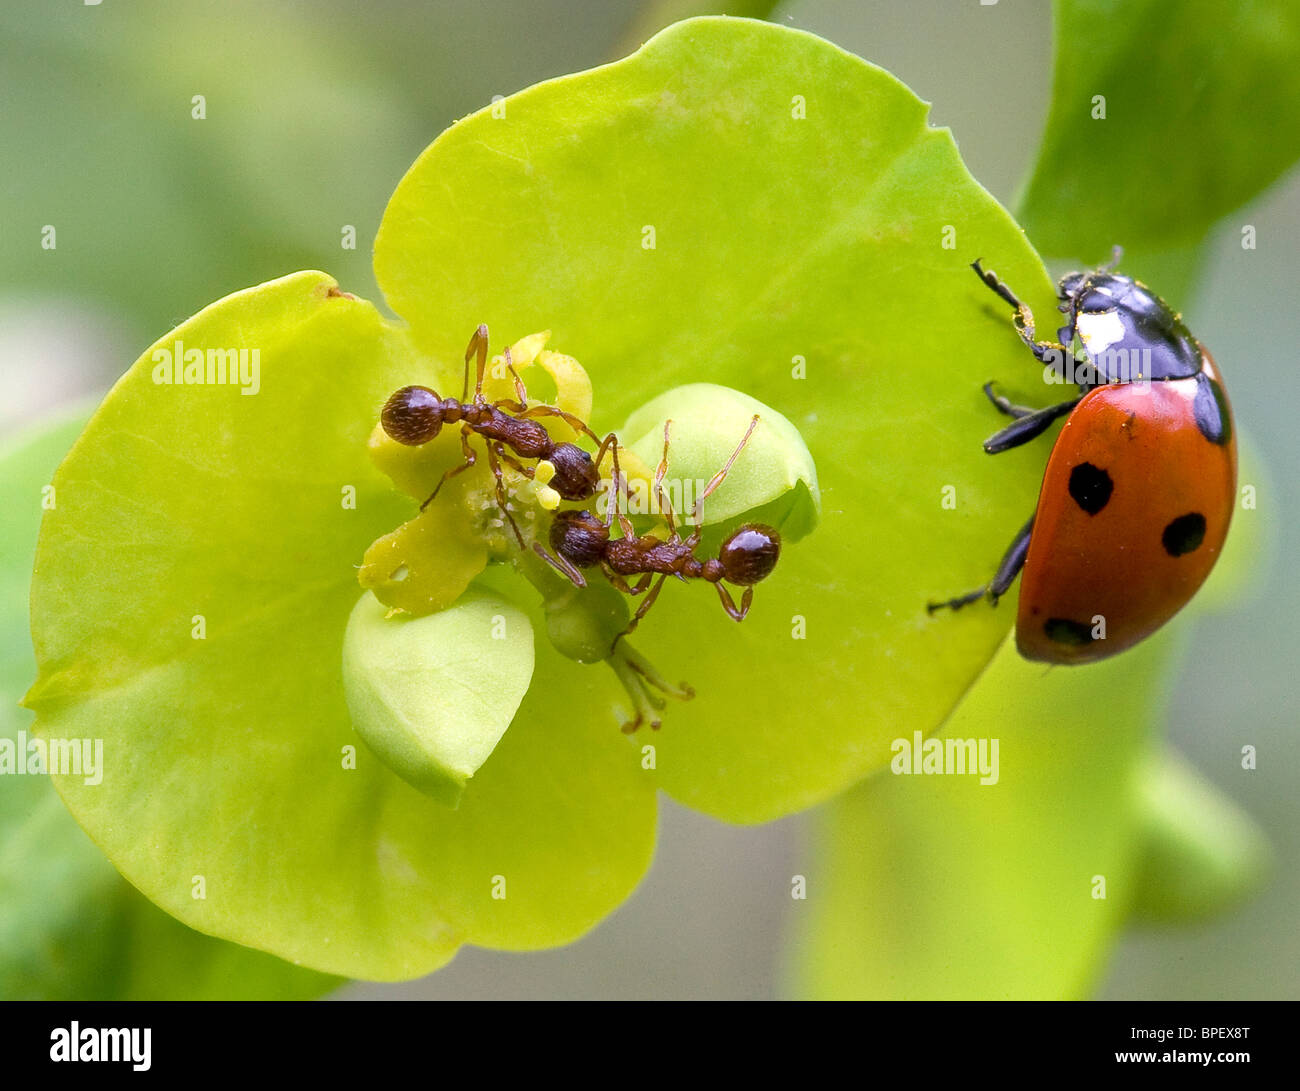 Zwei Arbeiterameisen treffen sich in einer Waldspurge-Blüte der Amygdaloides-Pflanze, während ein Marienkäfer mit sieben Flecken Coccinella 7 punctata in den Flügeln wartet - Kent UK Stockfoto